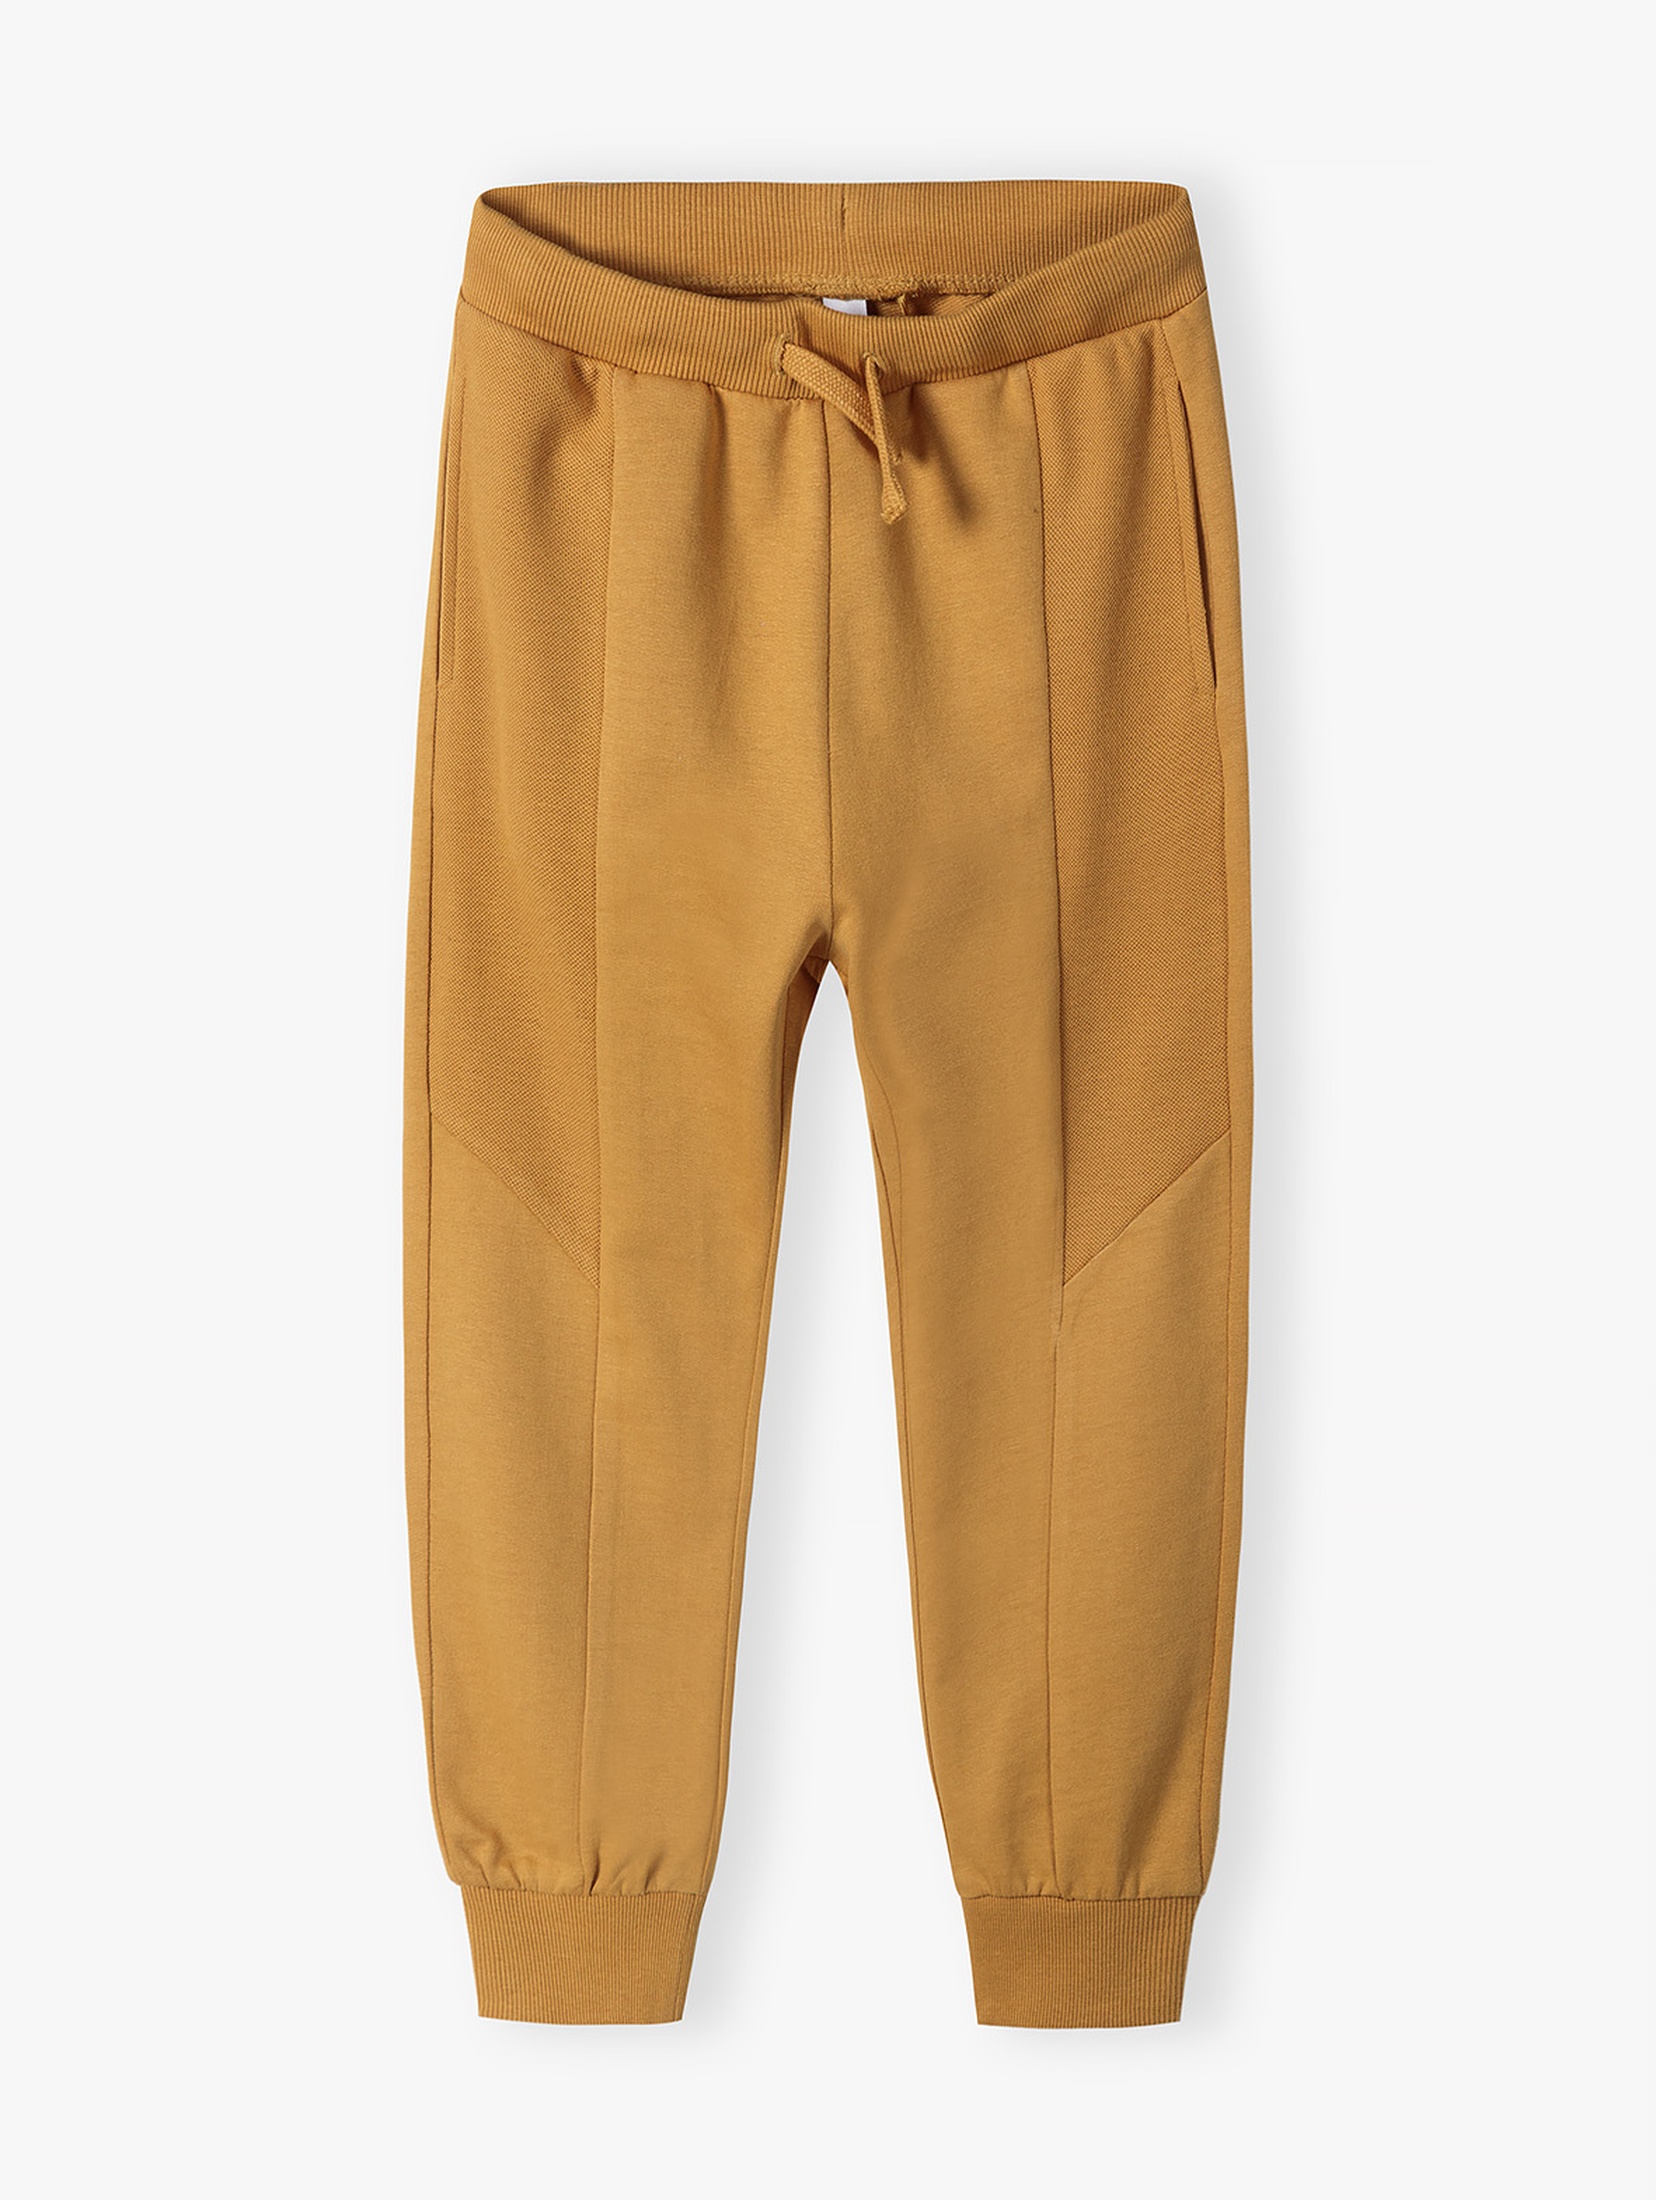 Bawełniane spodnie dresowe regular fit dla chłopca - żółte